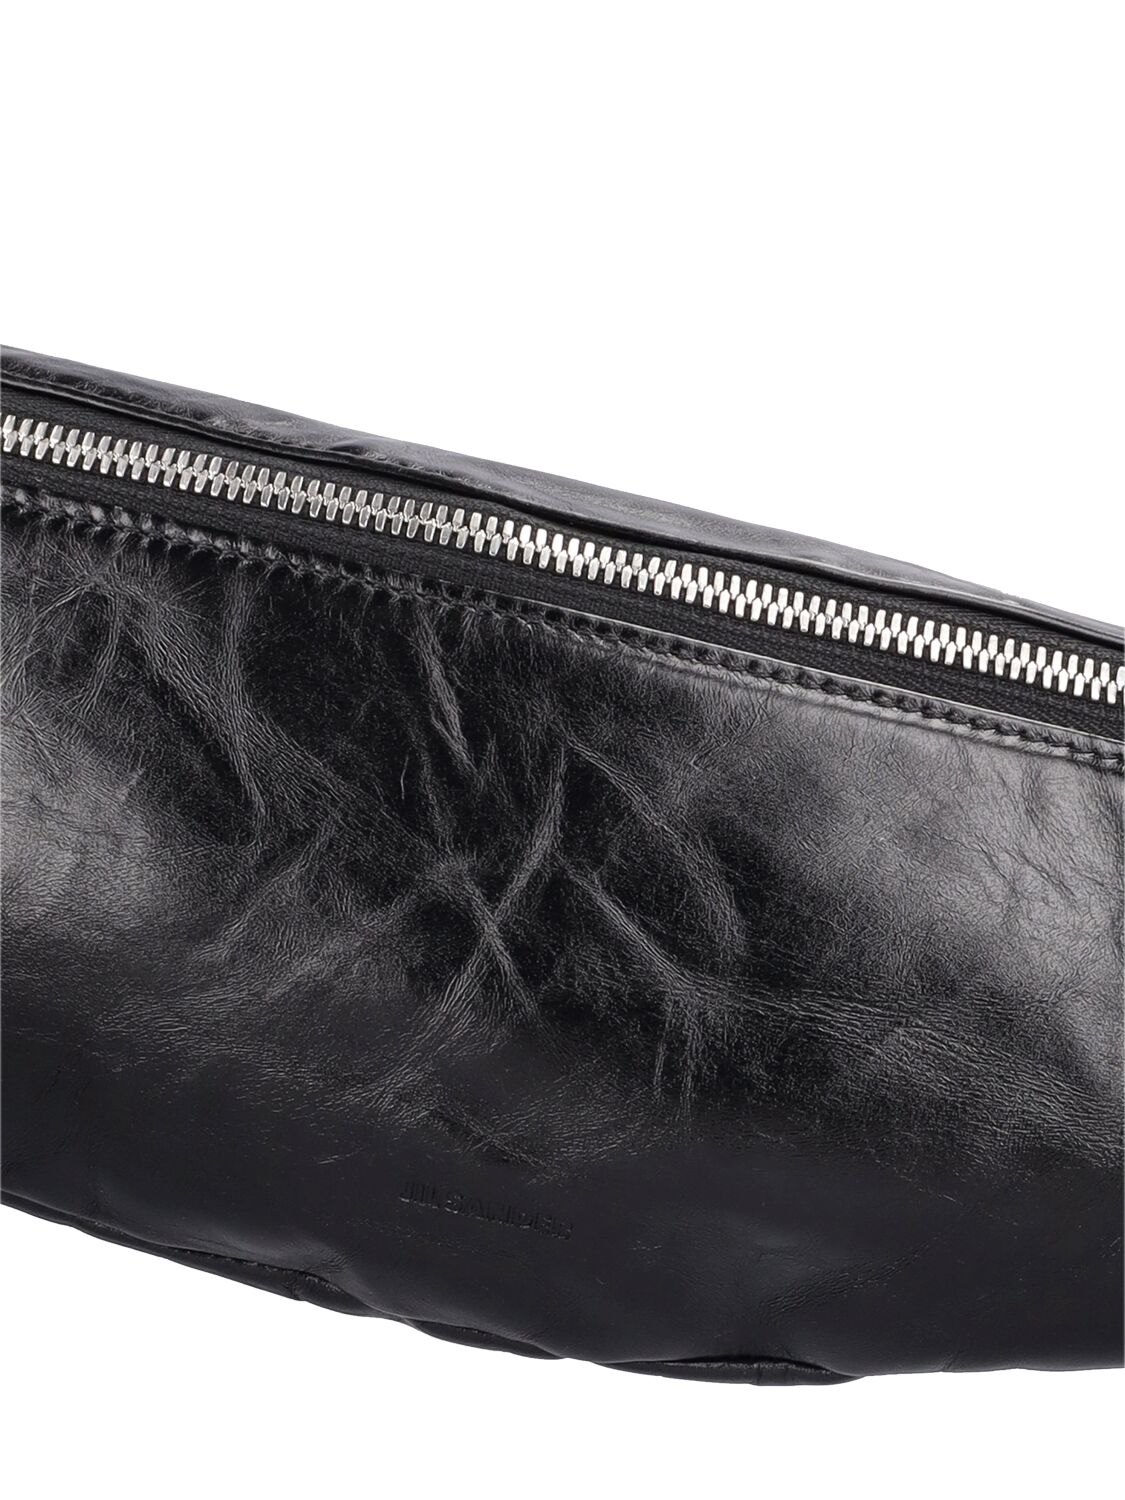 Shop Jil Sander Leather Belt Bag In Black